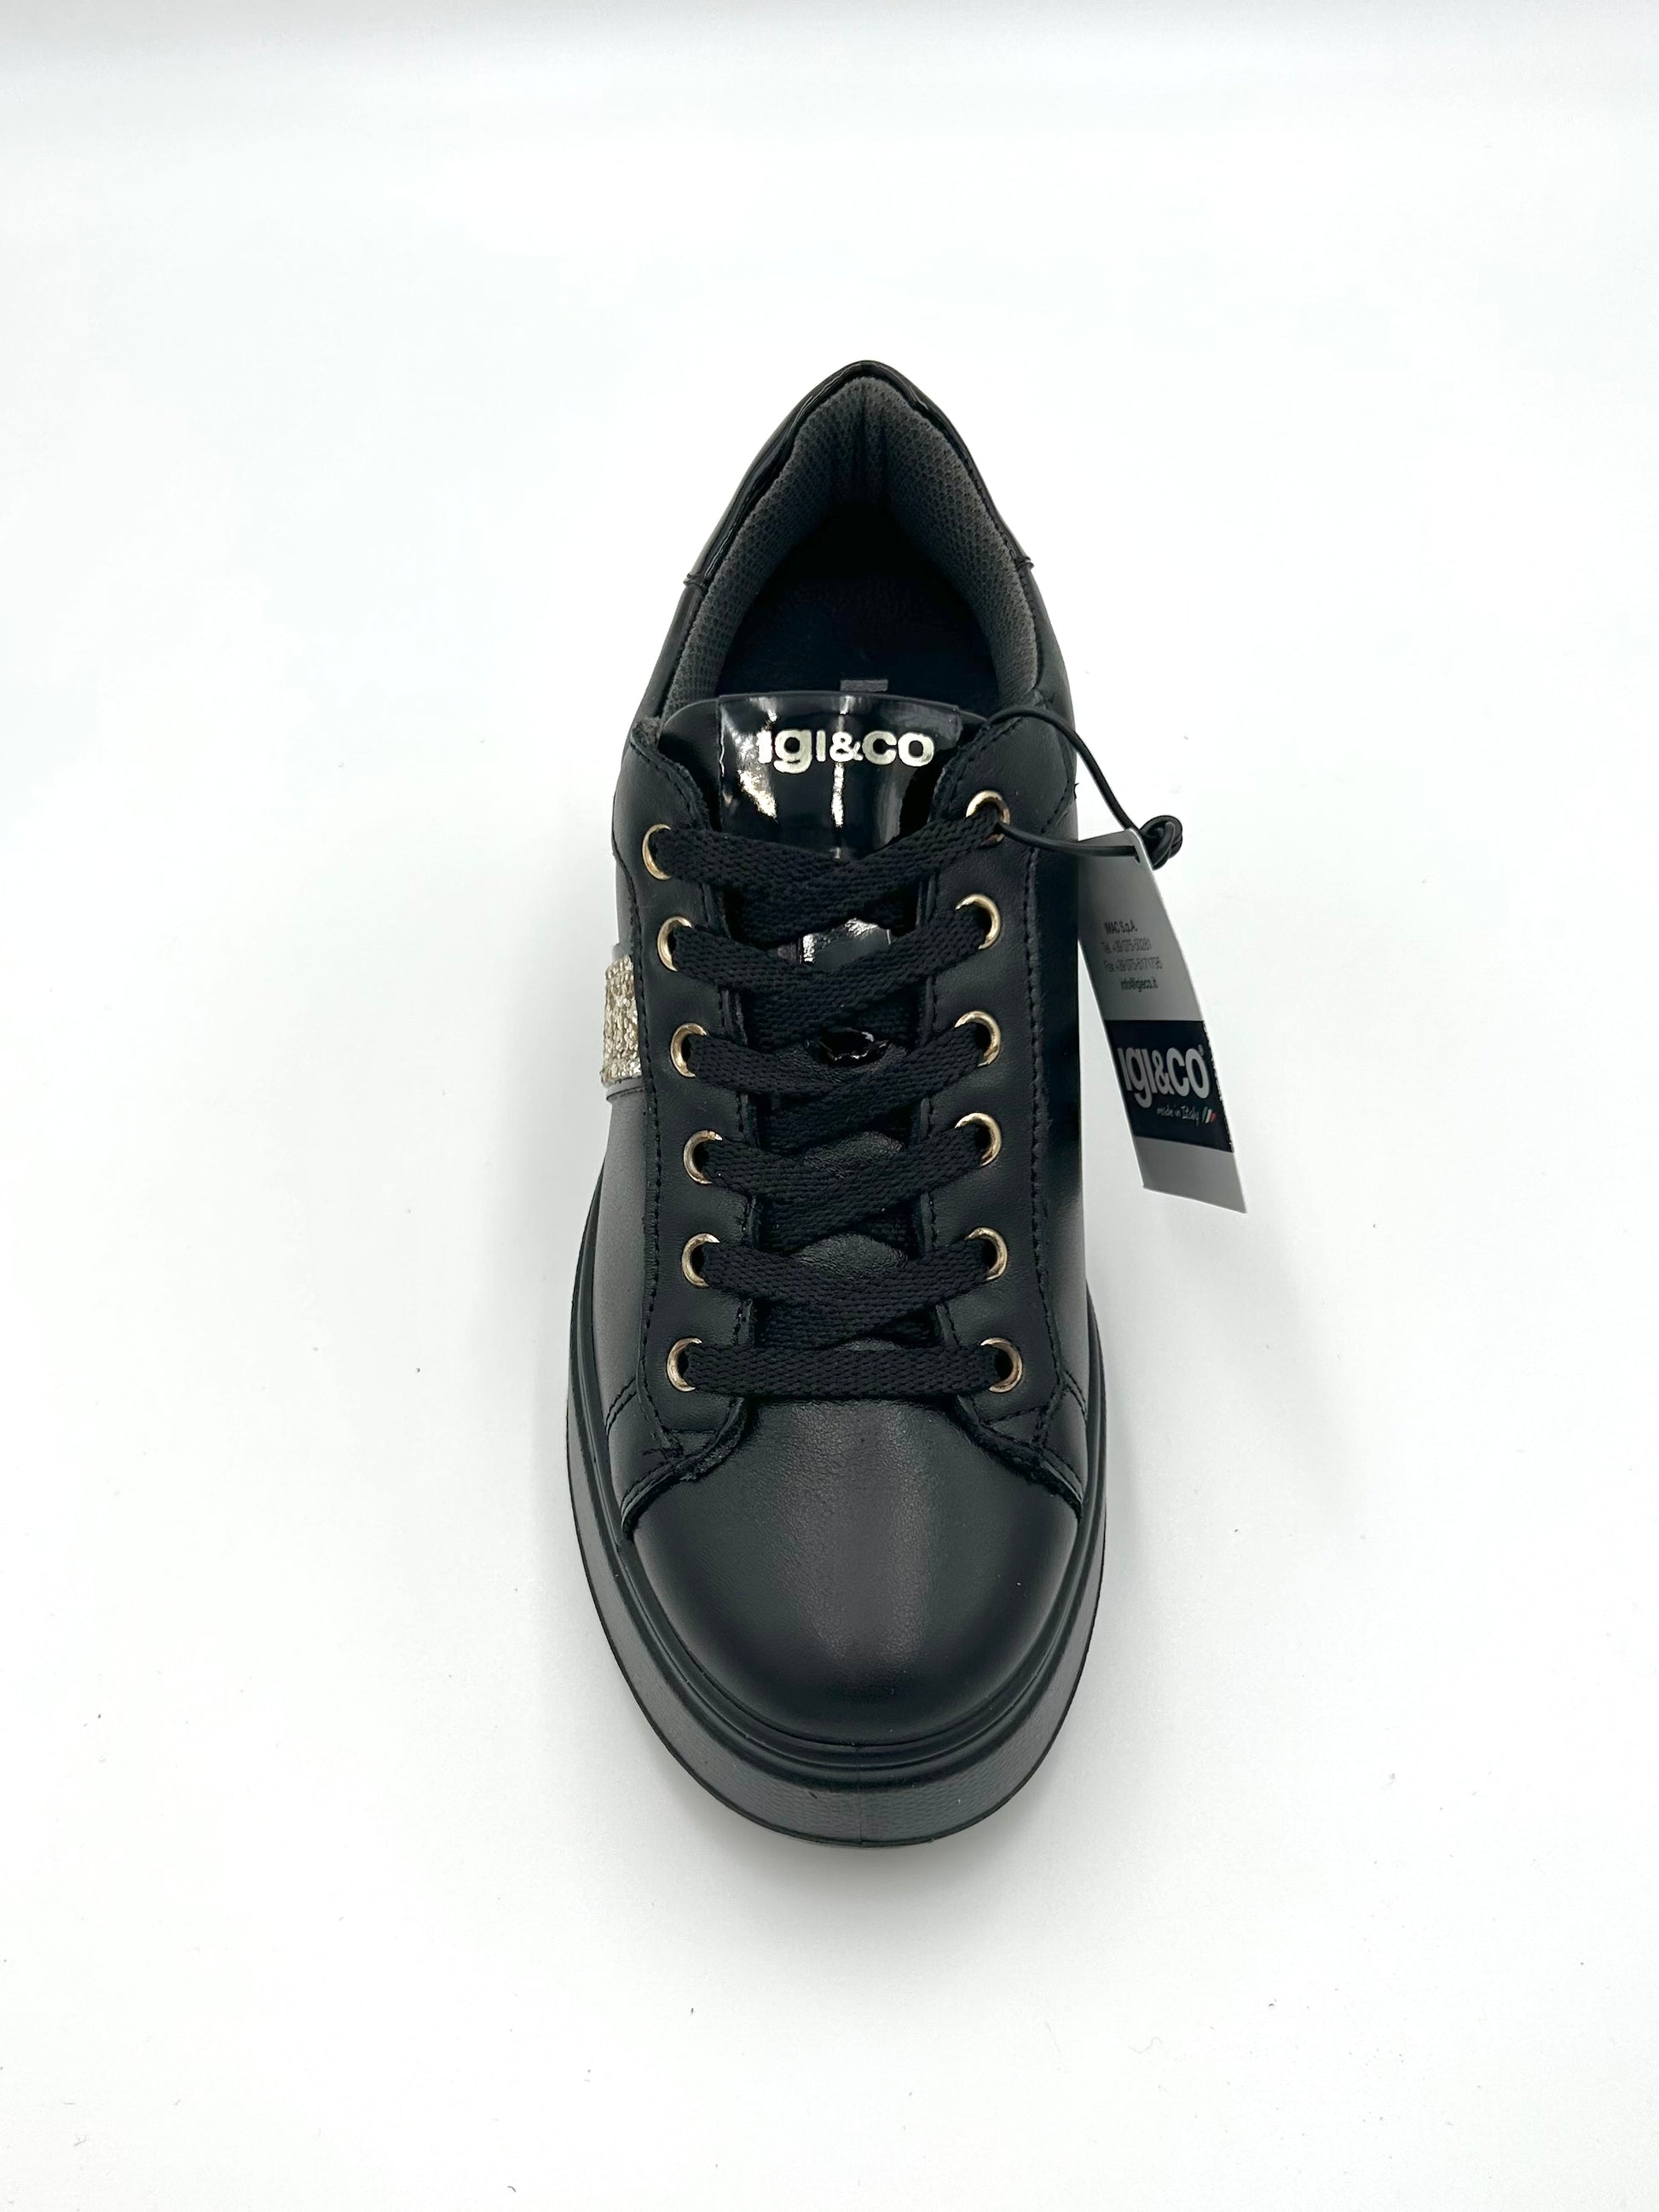 Igi&co Sneakers con zeppa - in pelle nera - Igi&co